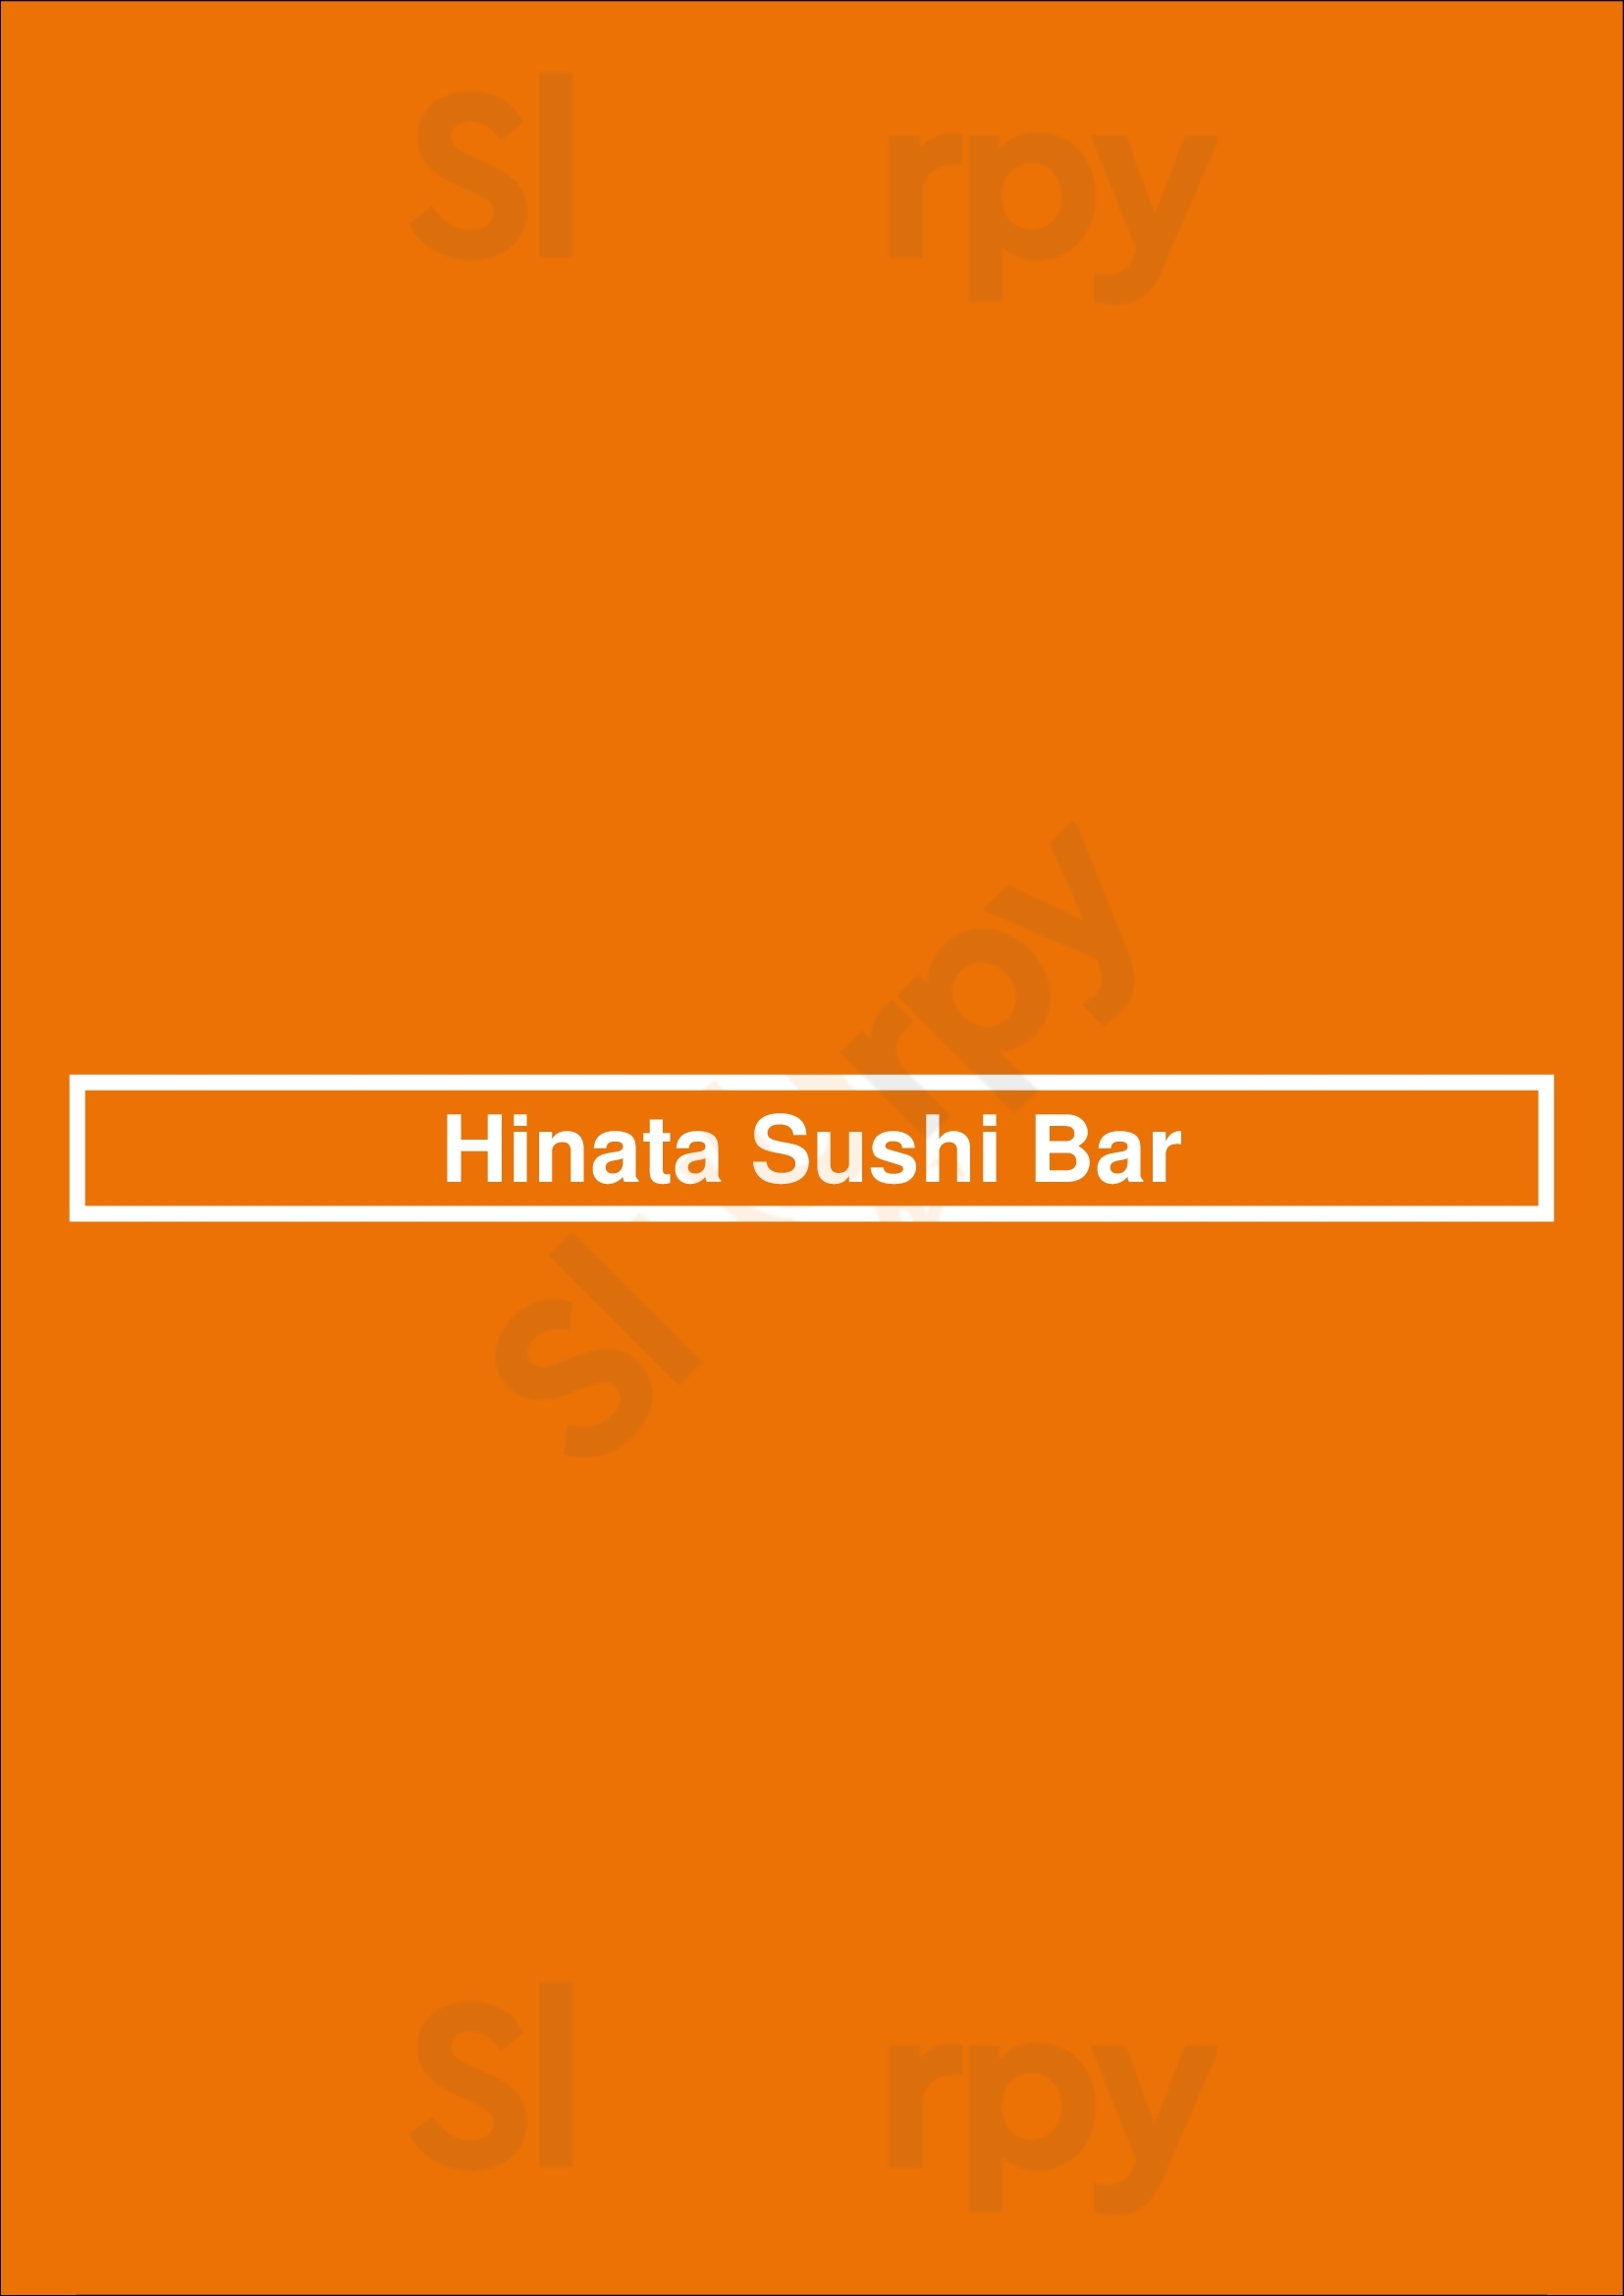 Hinata Sushi Bar Louvain Menu - 1